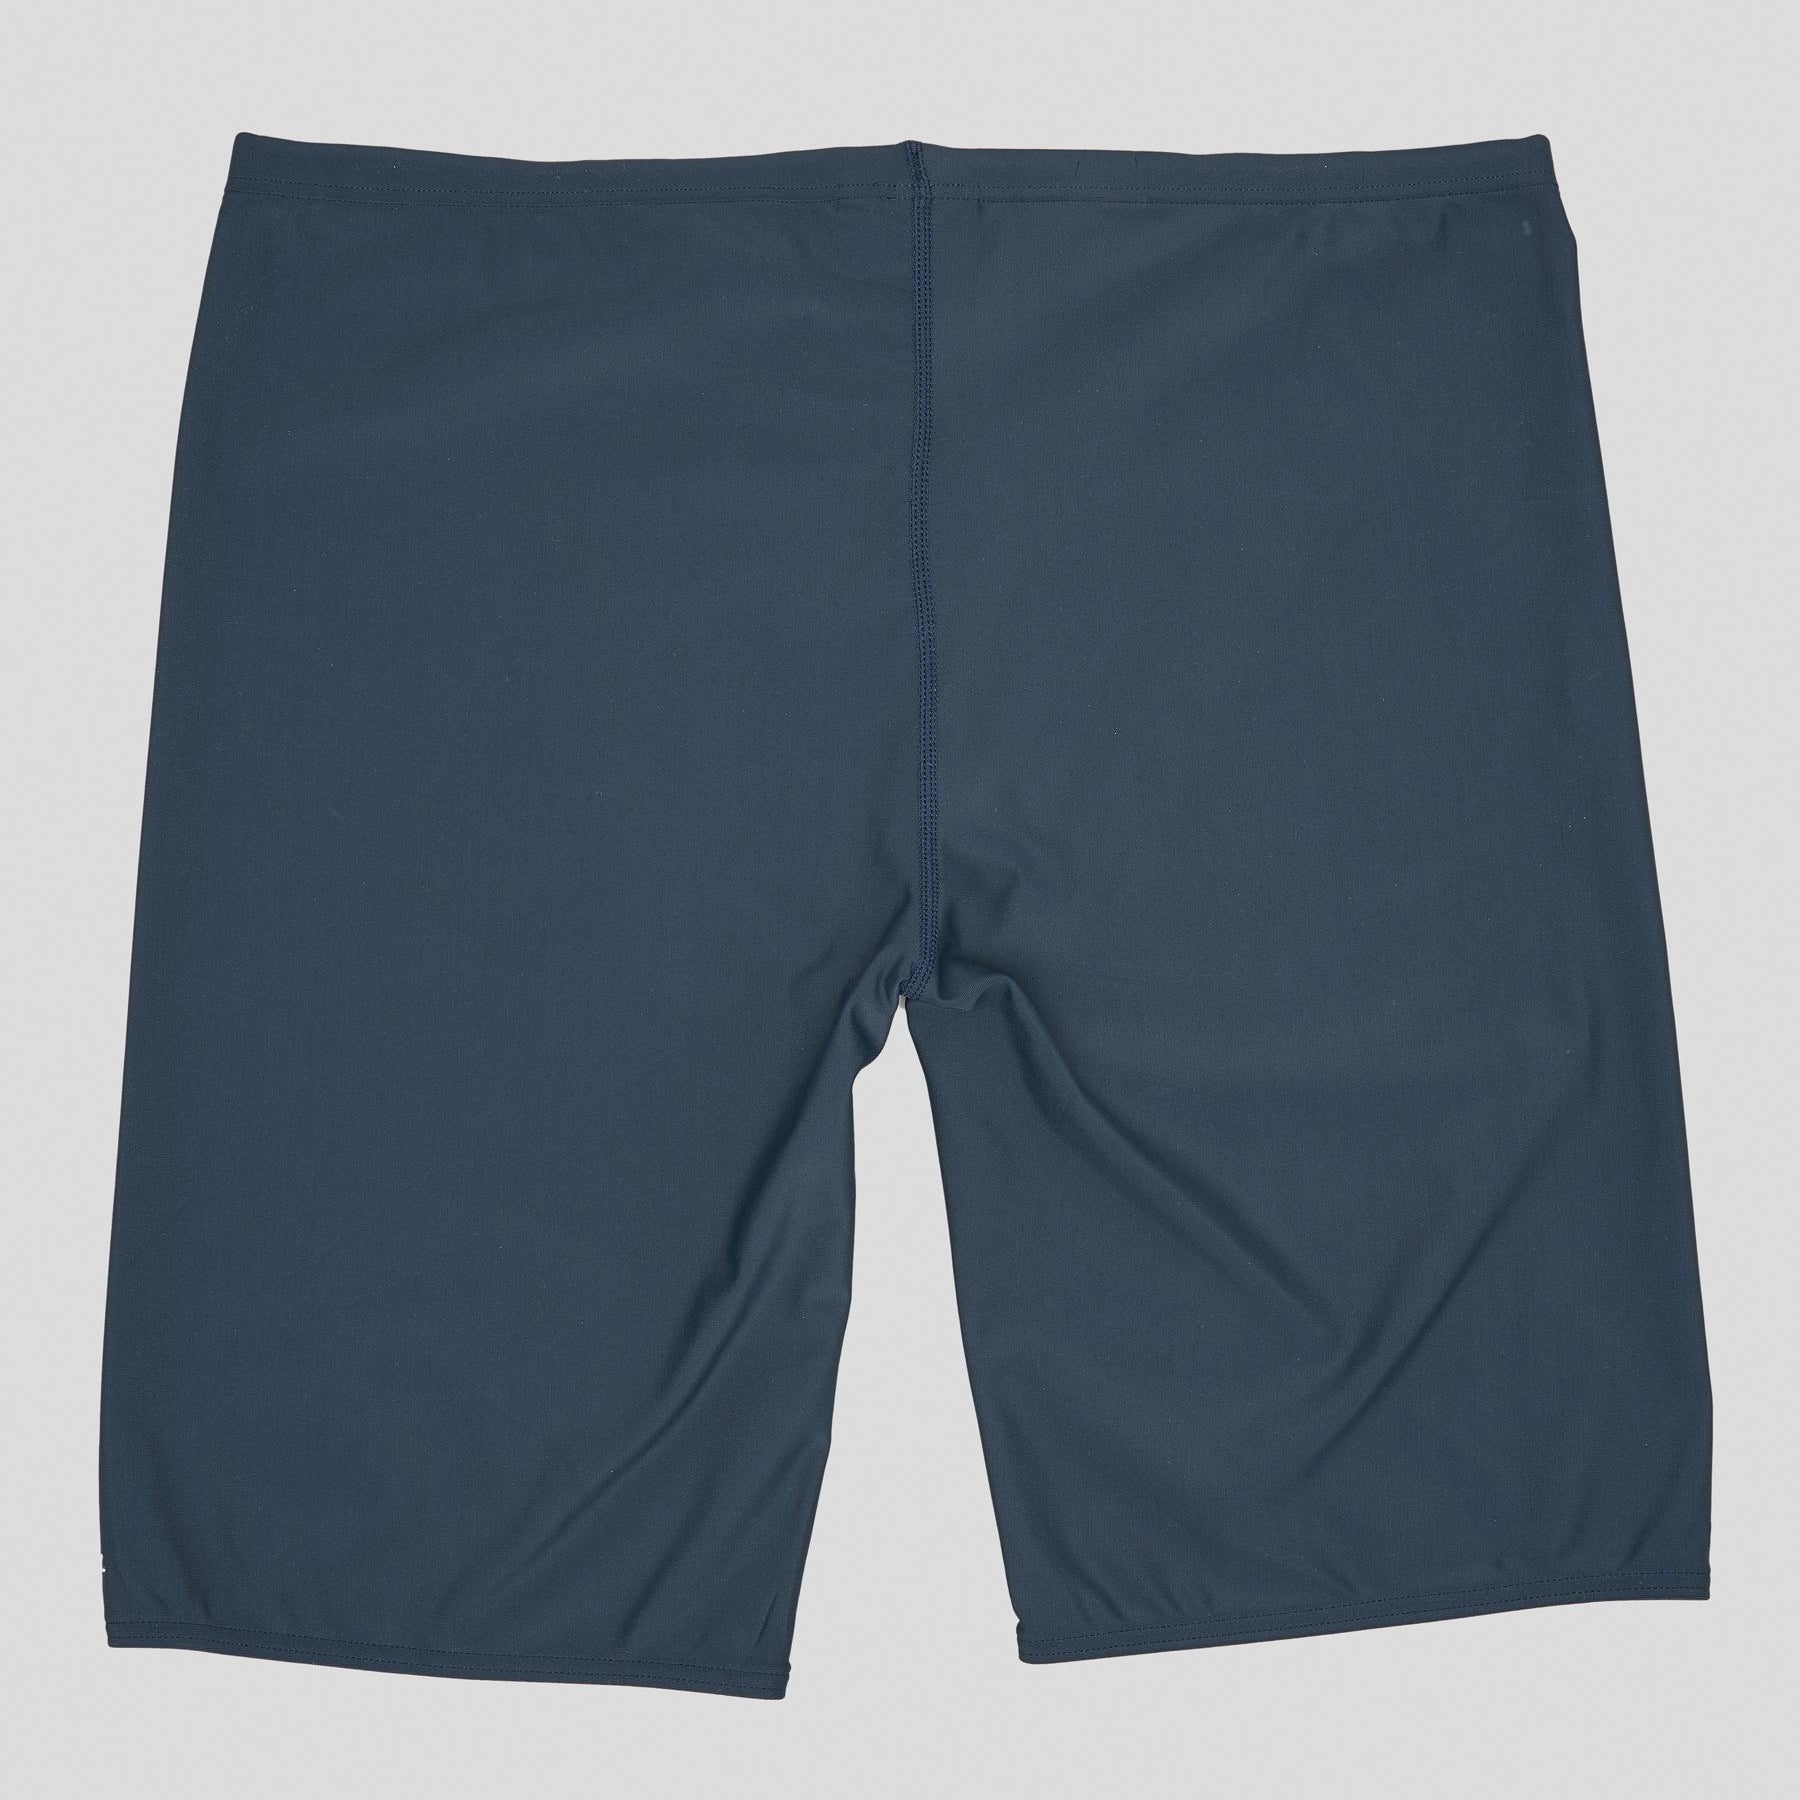 Ripcurl Corp Swim Shorts